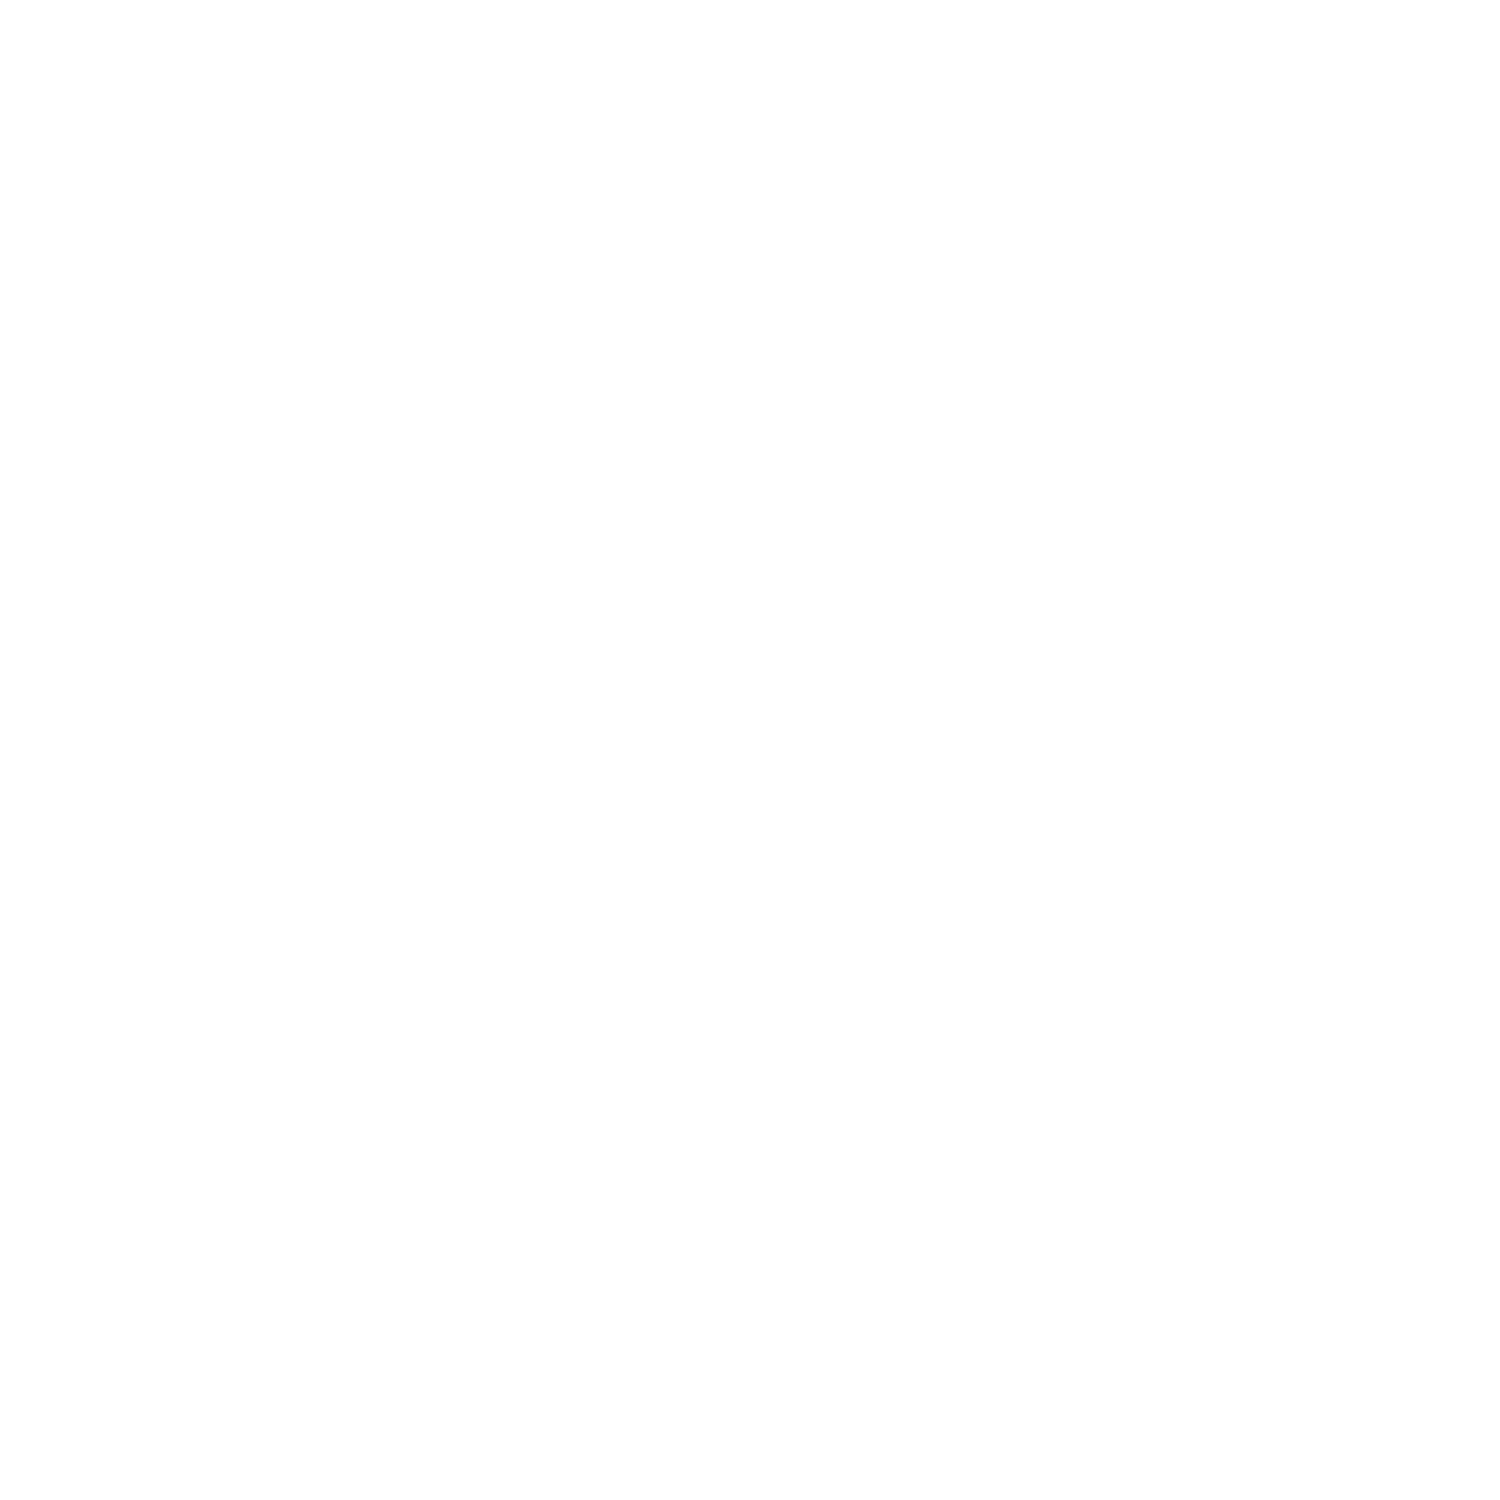 солист группы Мгзавреби с гитарой поднял руки и общается со зрителями на концерте в Москве. Топ-20 концертный фотограф Георгий Безбородов, Москва, Анталия.